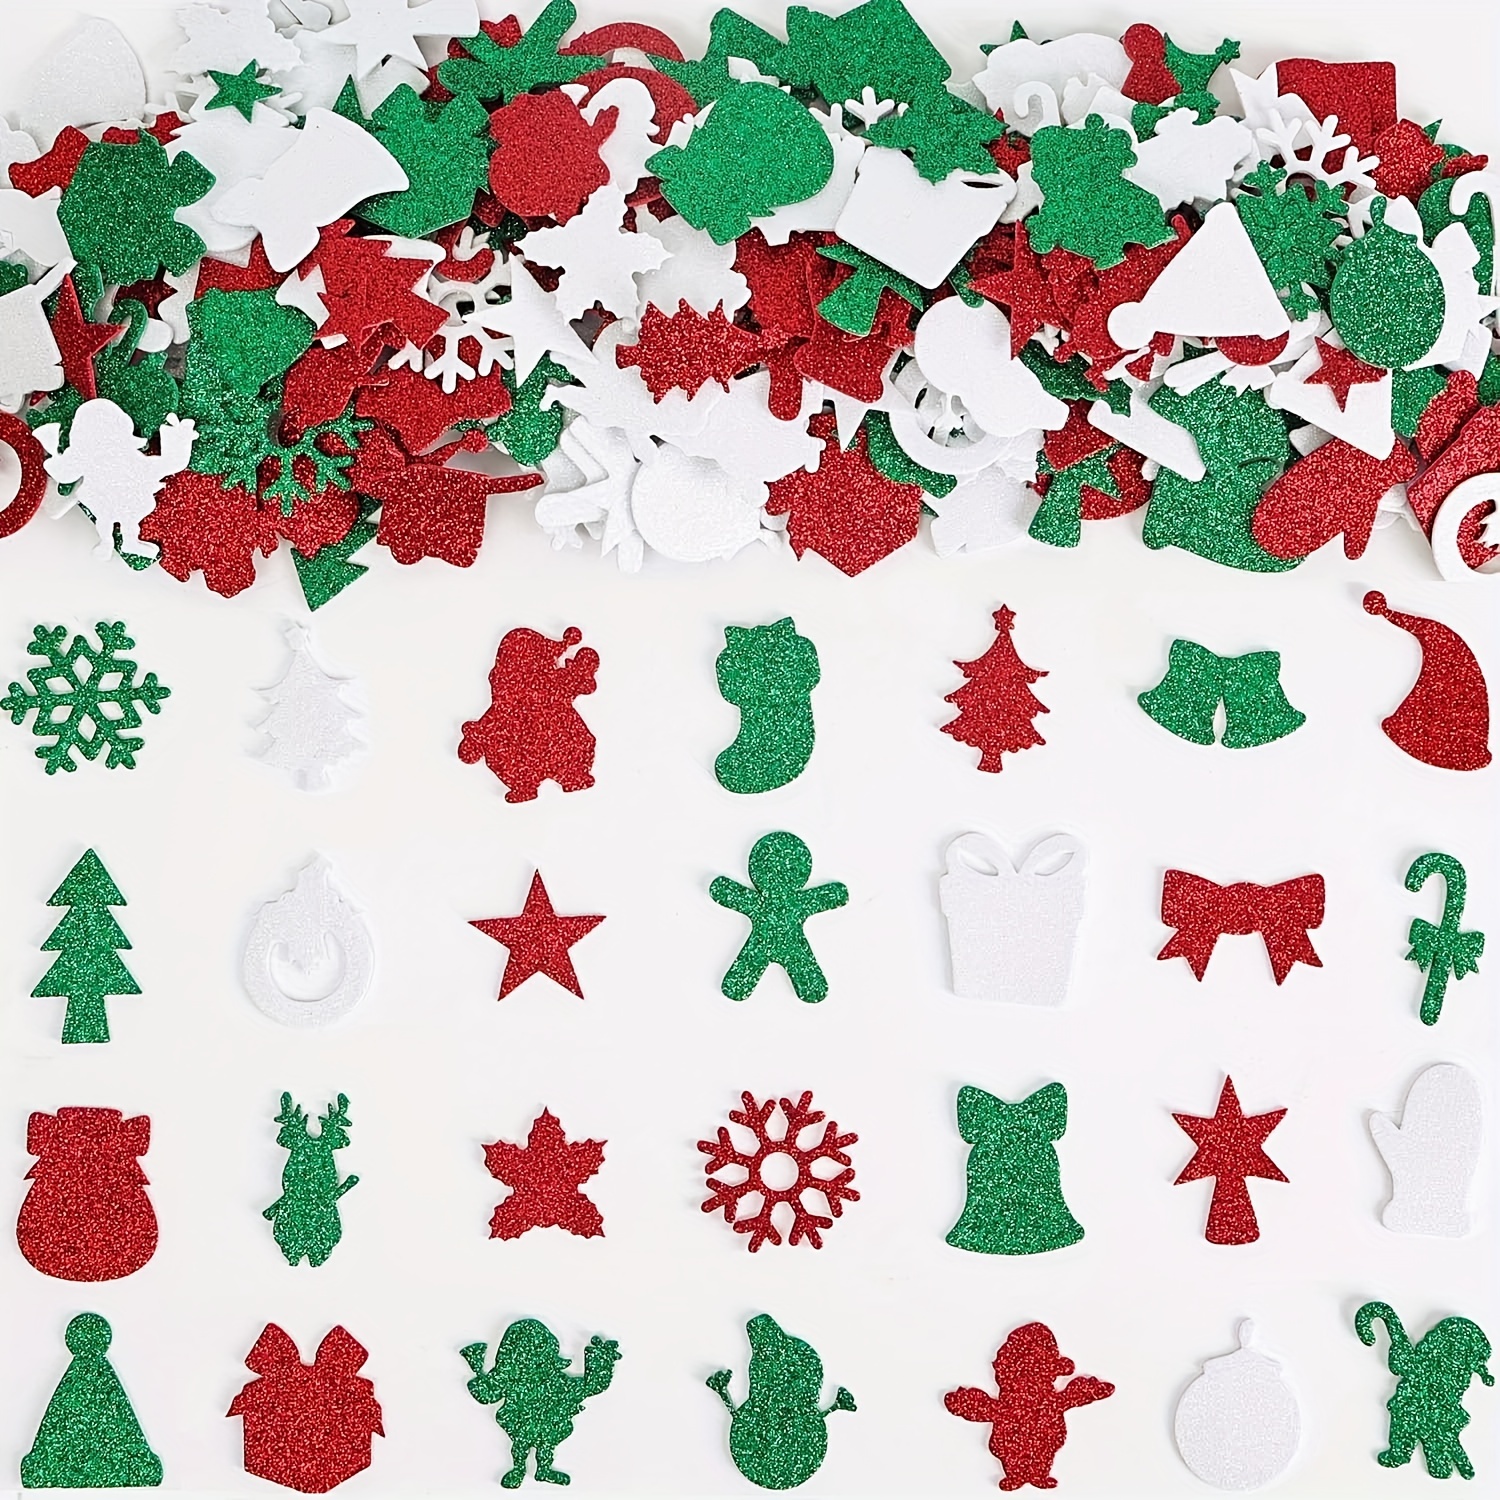  Aneco 500 Pieces Glitter Snowflakes Foam Stickers Self